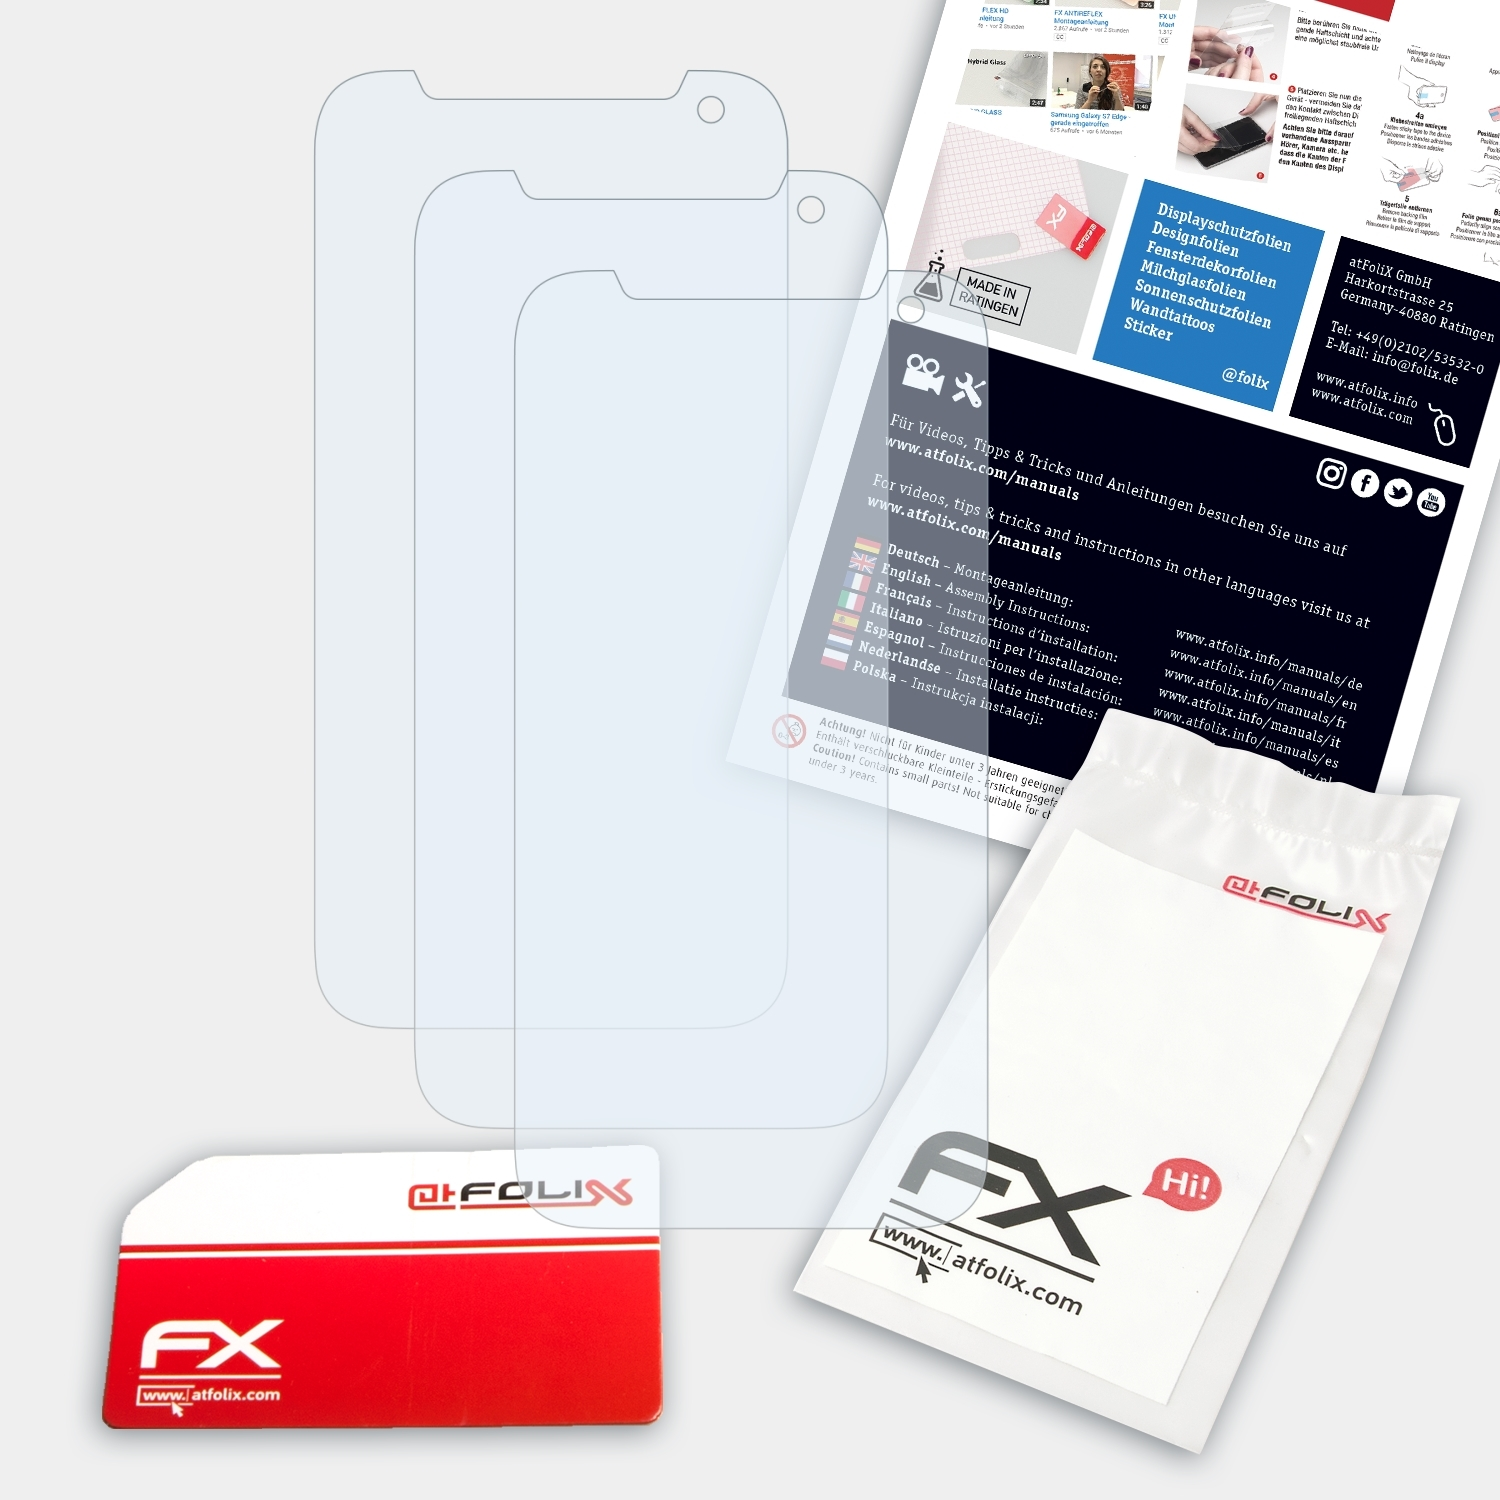 Displayschutz(für 310) 3x ATFOLIX HTC Desire FX-Clear